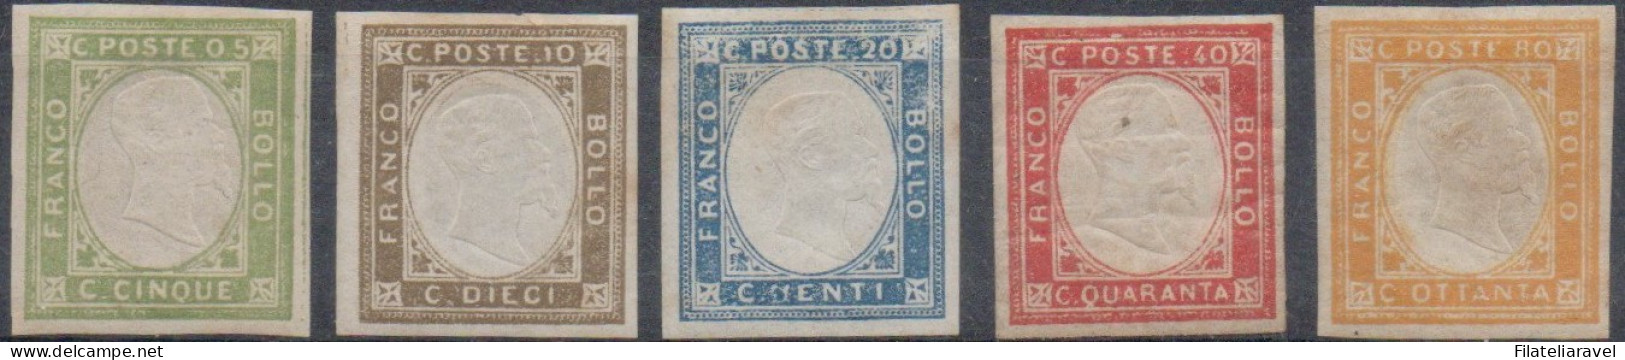 */** 1861 - Napoli - Province Napoletane Effigie Vittorio Em.II Serie Completa (1/5), Valori In Cent Di Lira Mista (500) - Napoli